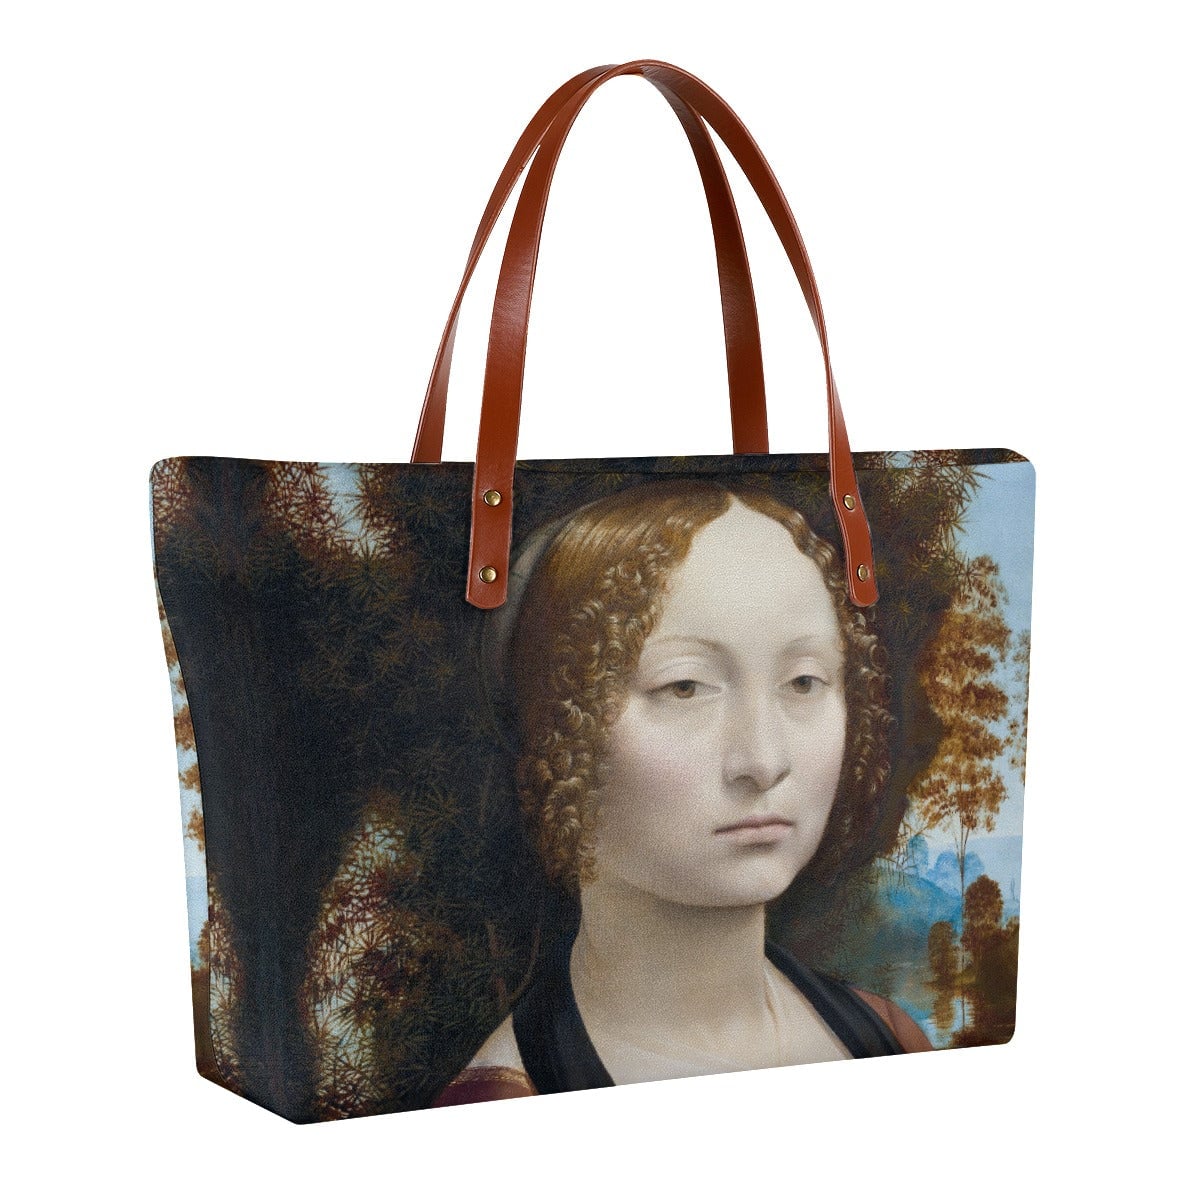 Leonardo da Vinci’s Ginevra de’ Benci Tote Bag